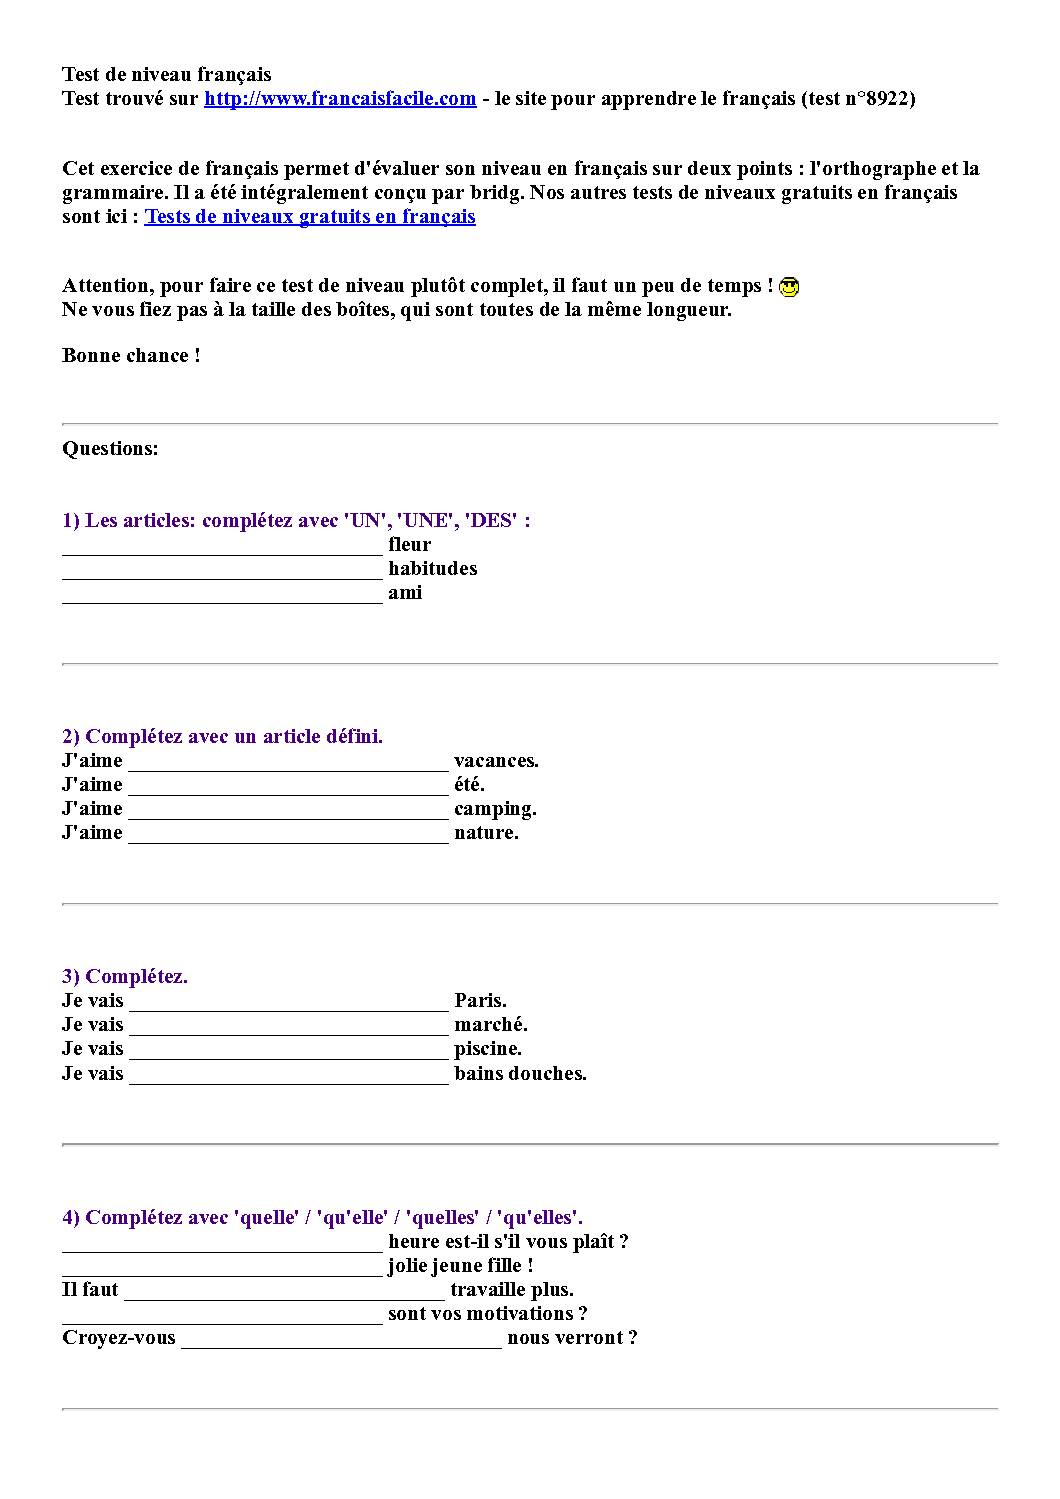 Test de niveau français pdf